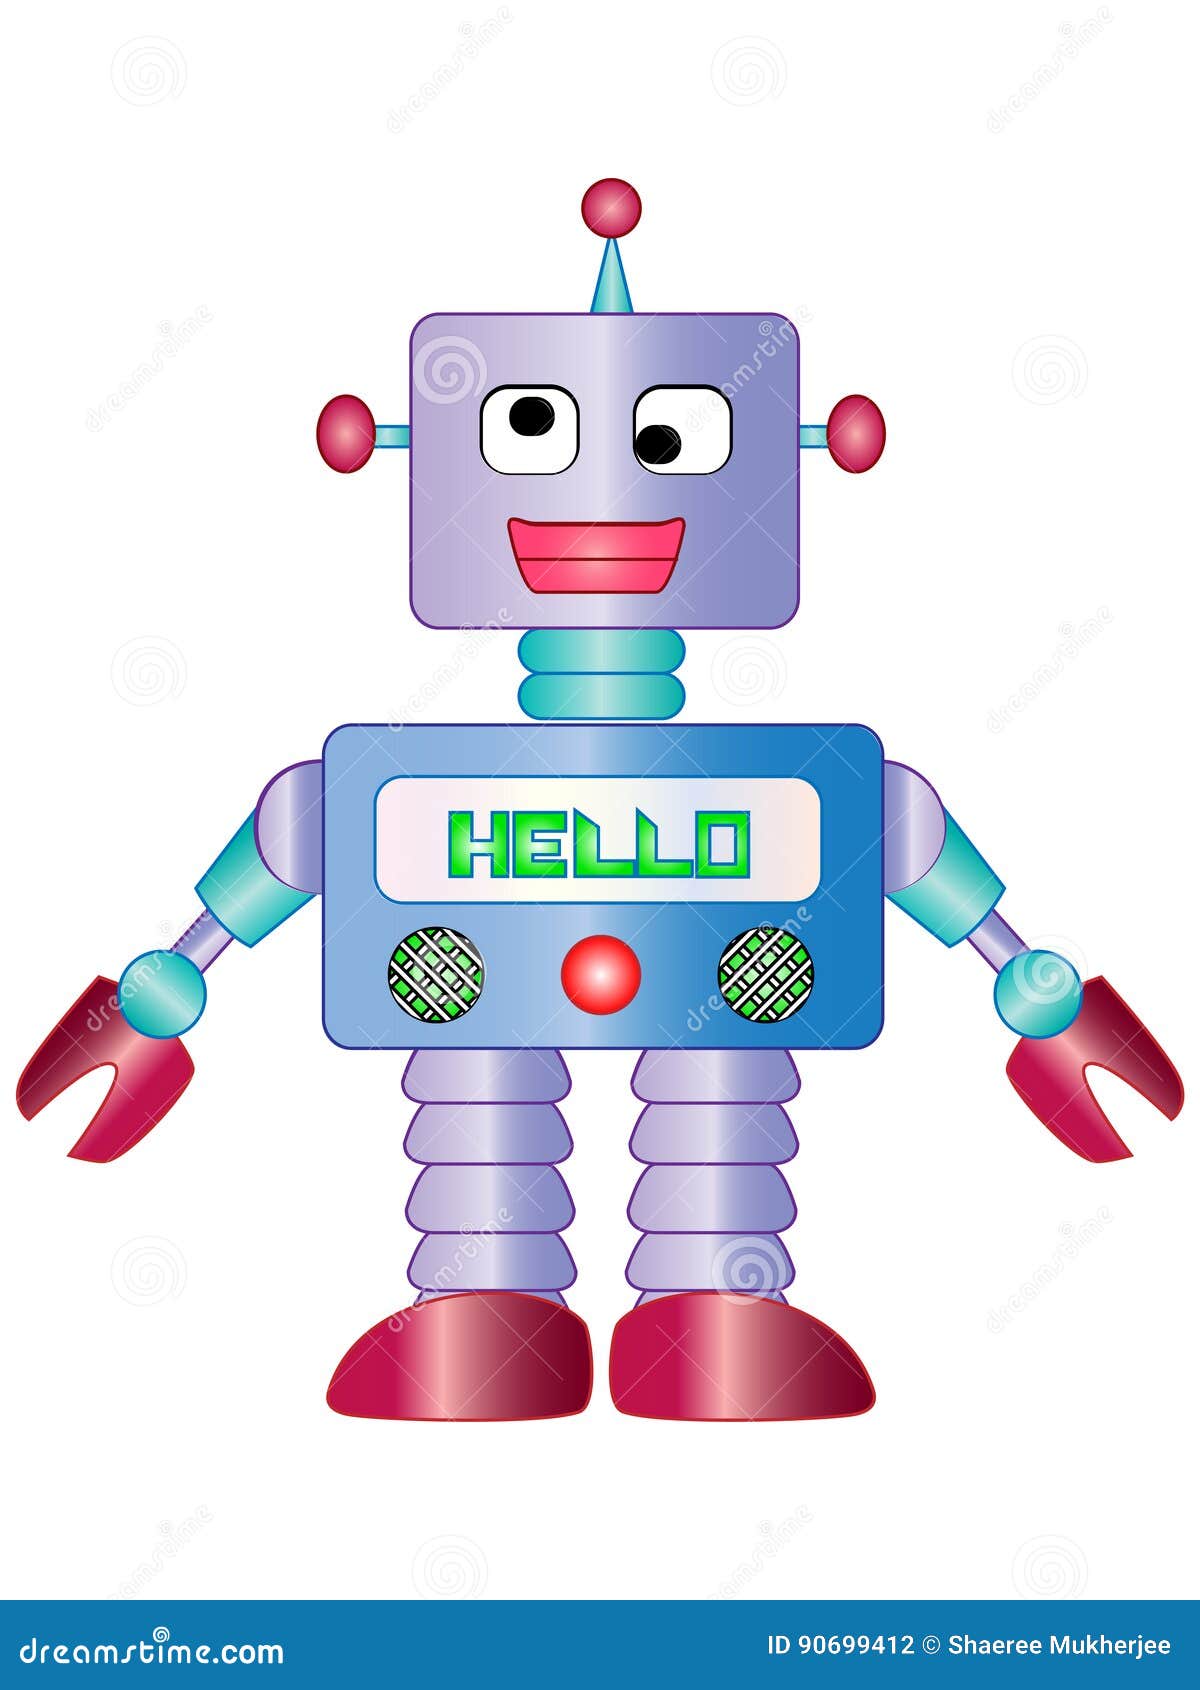 cartoon-toy-robot-vector-illustration-clipart-90699412.jpg